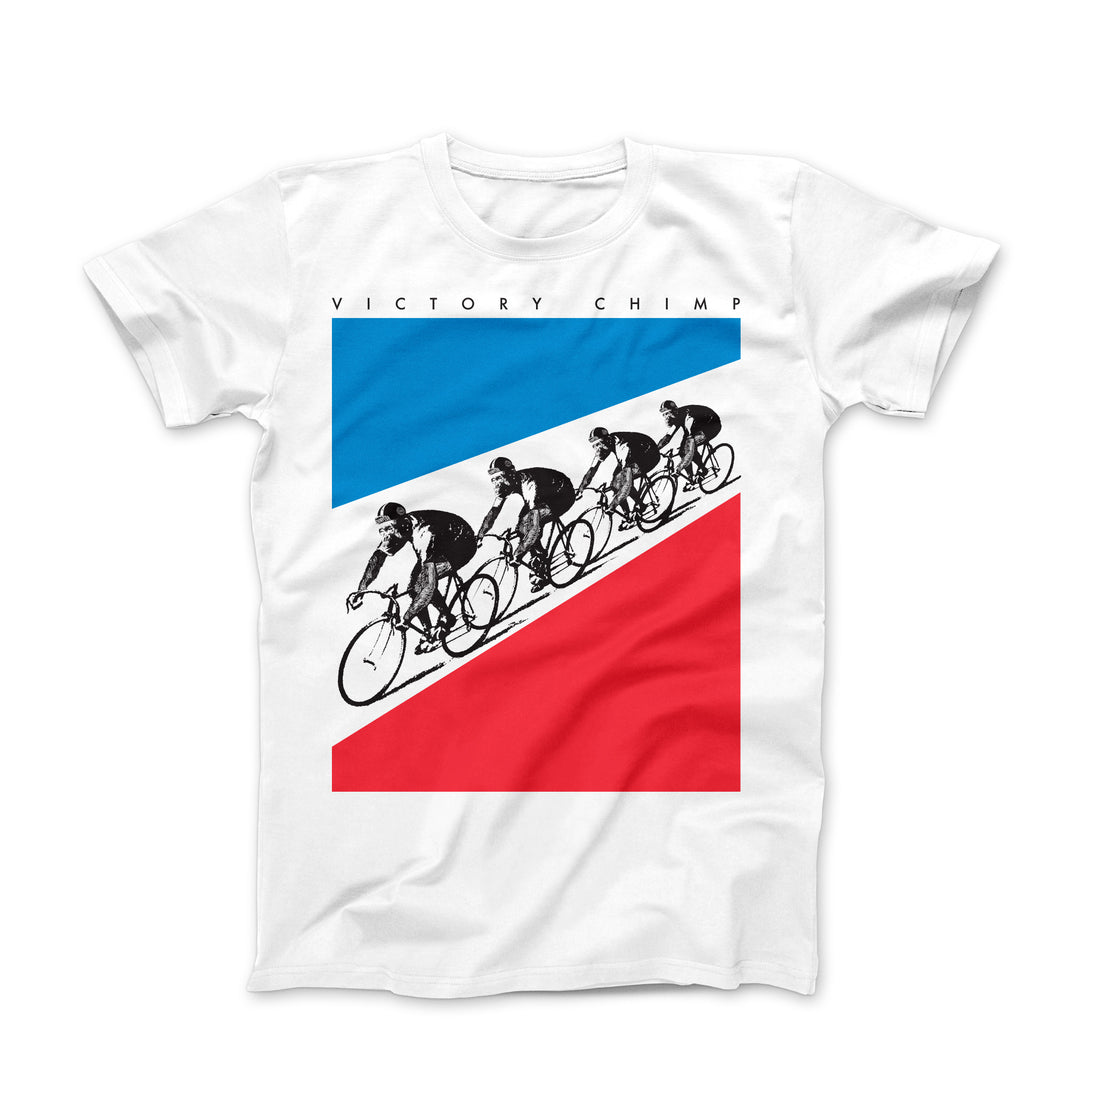 Tour De Singe Organic Cotton Cycling T-Shirt